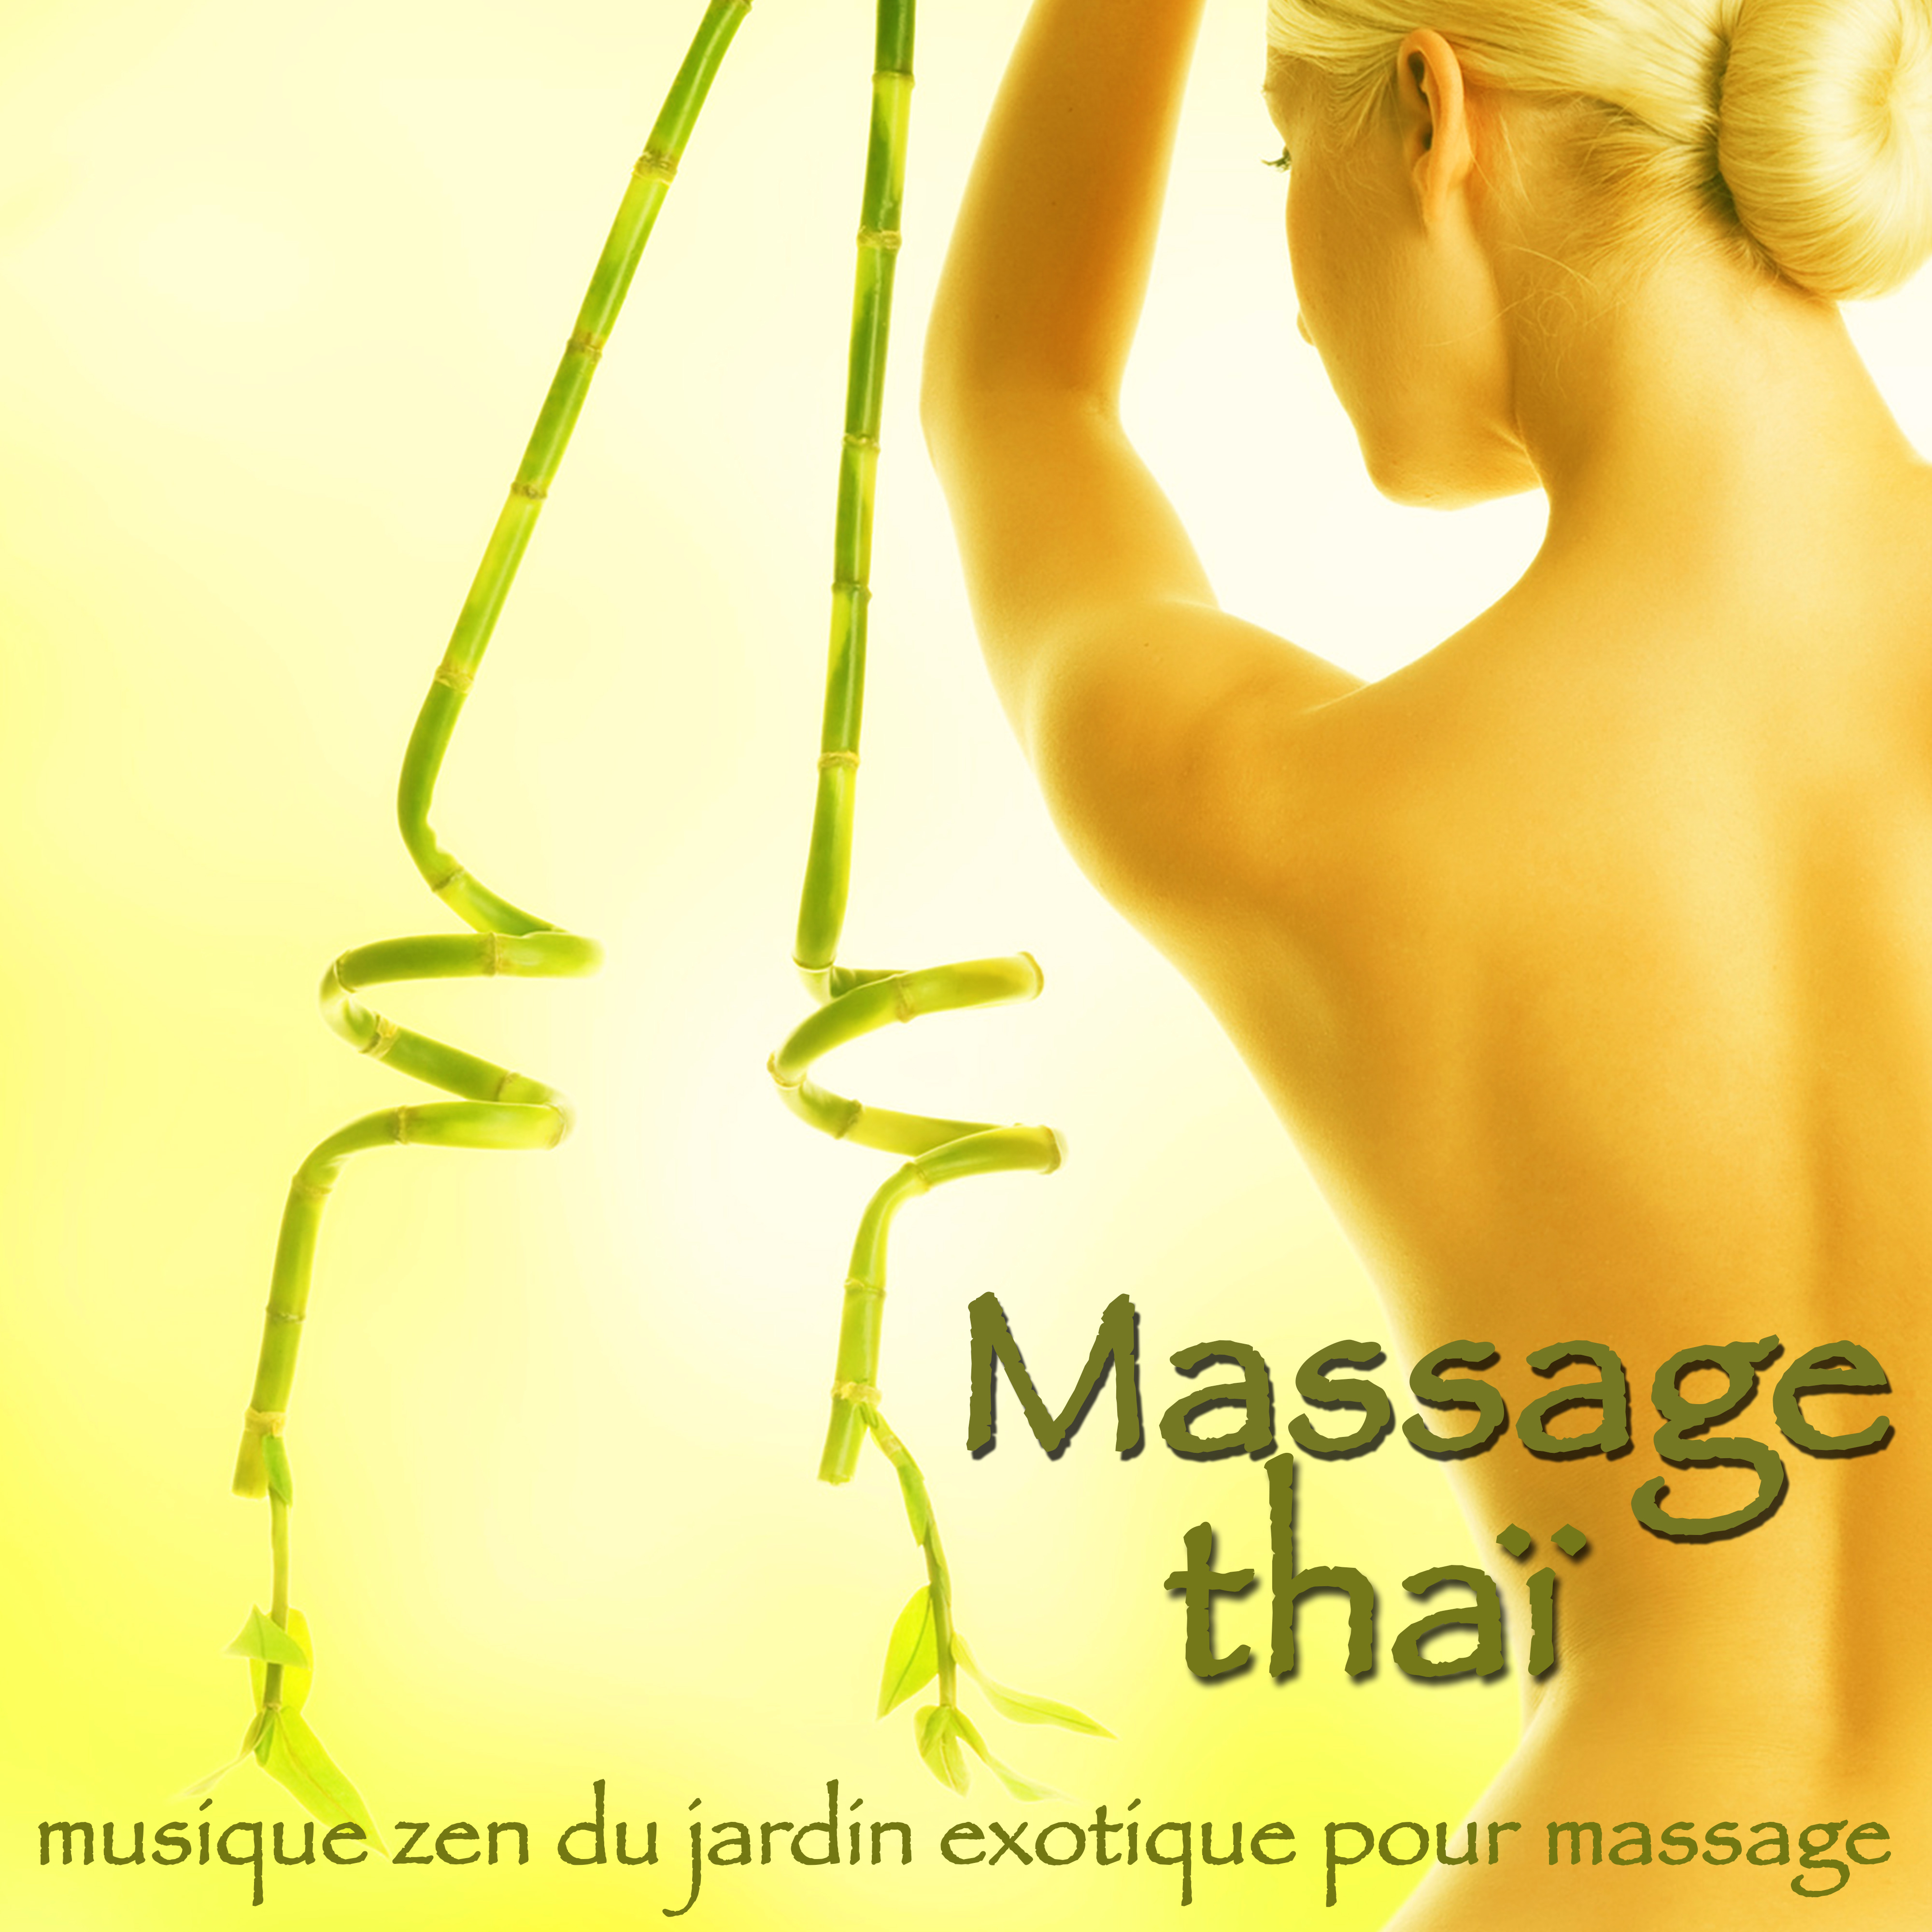 Massage thaï – Musique zen du jardin exotique pour massage, détente, spa et wellness bien-être